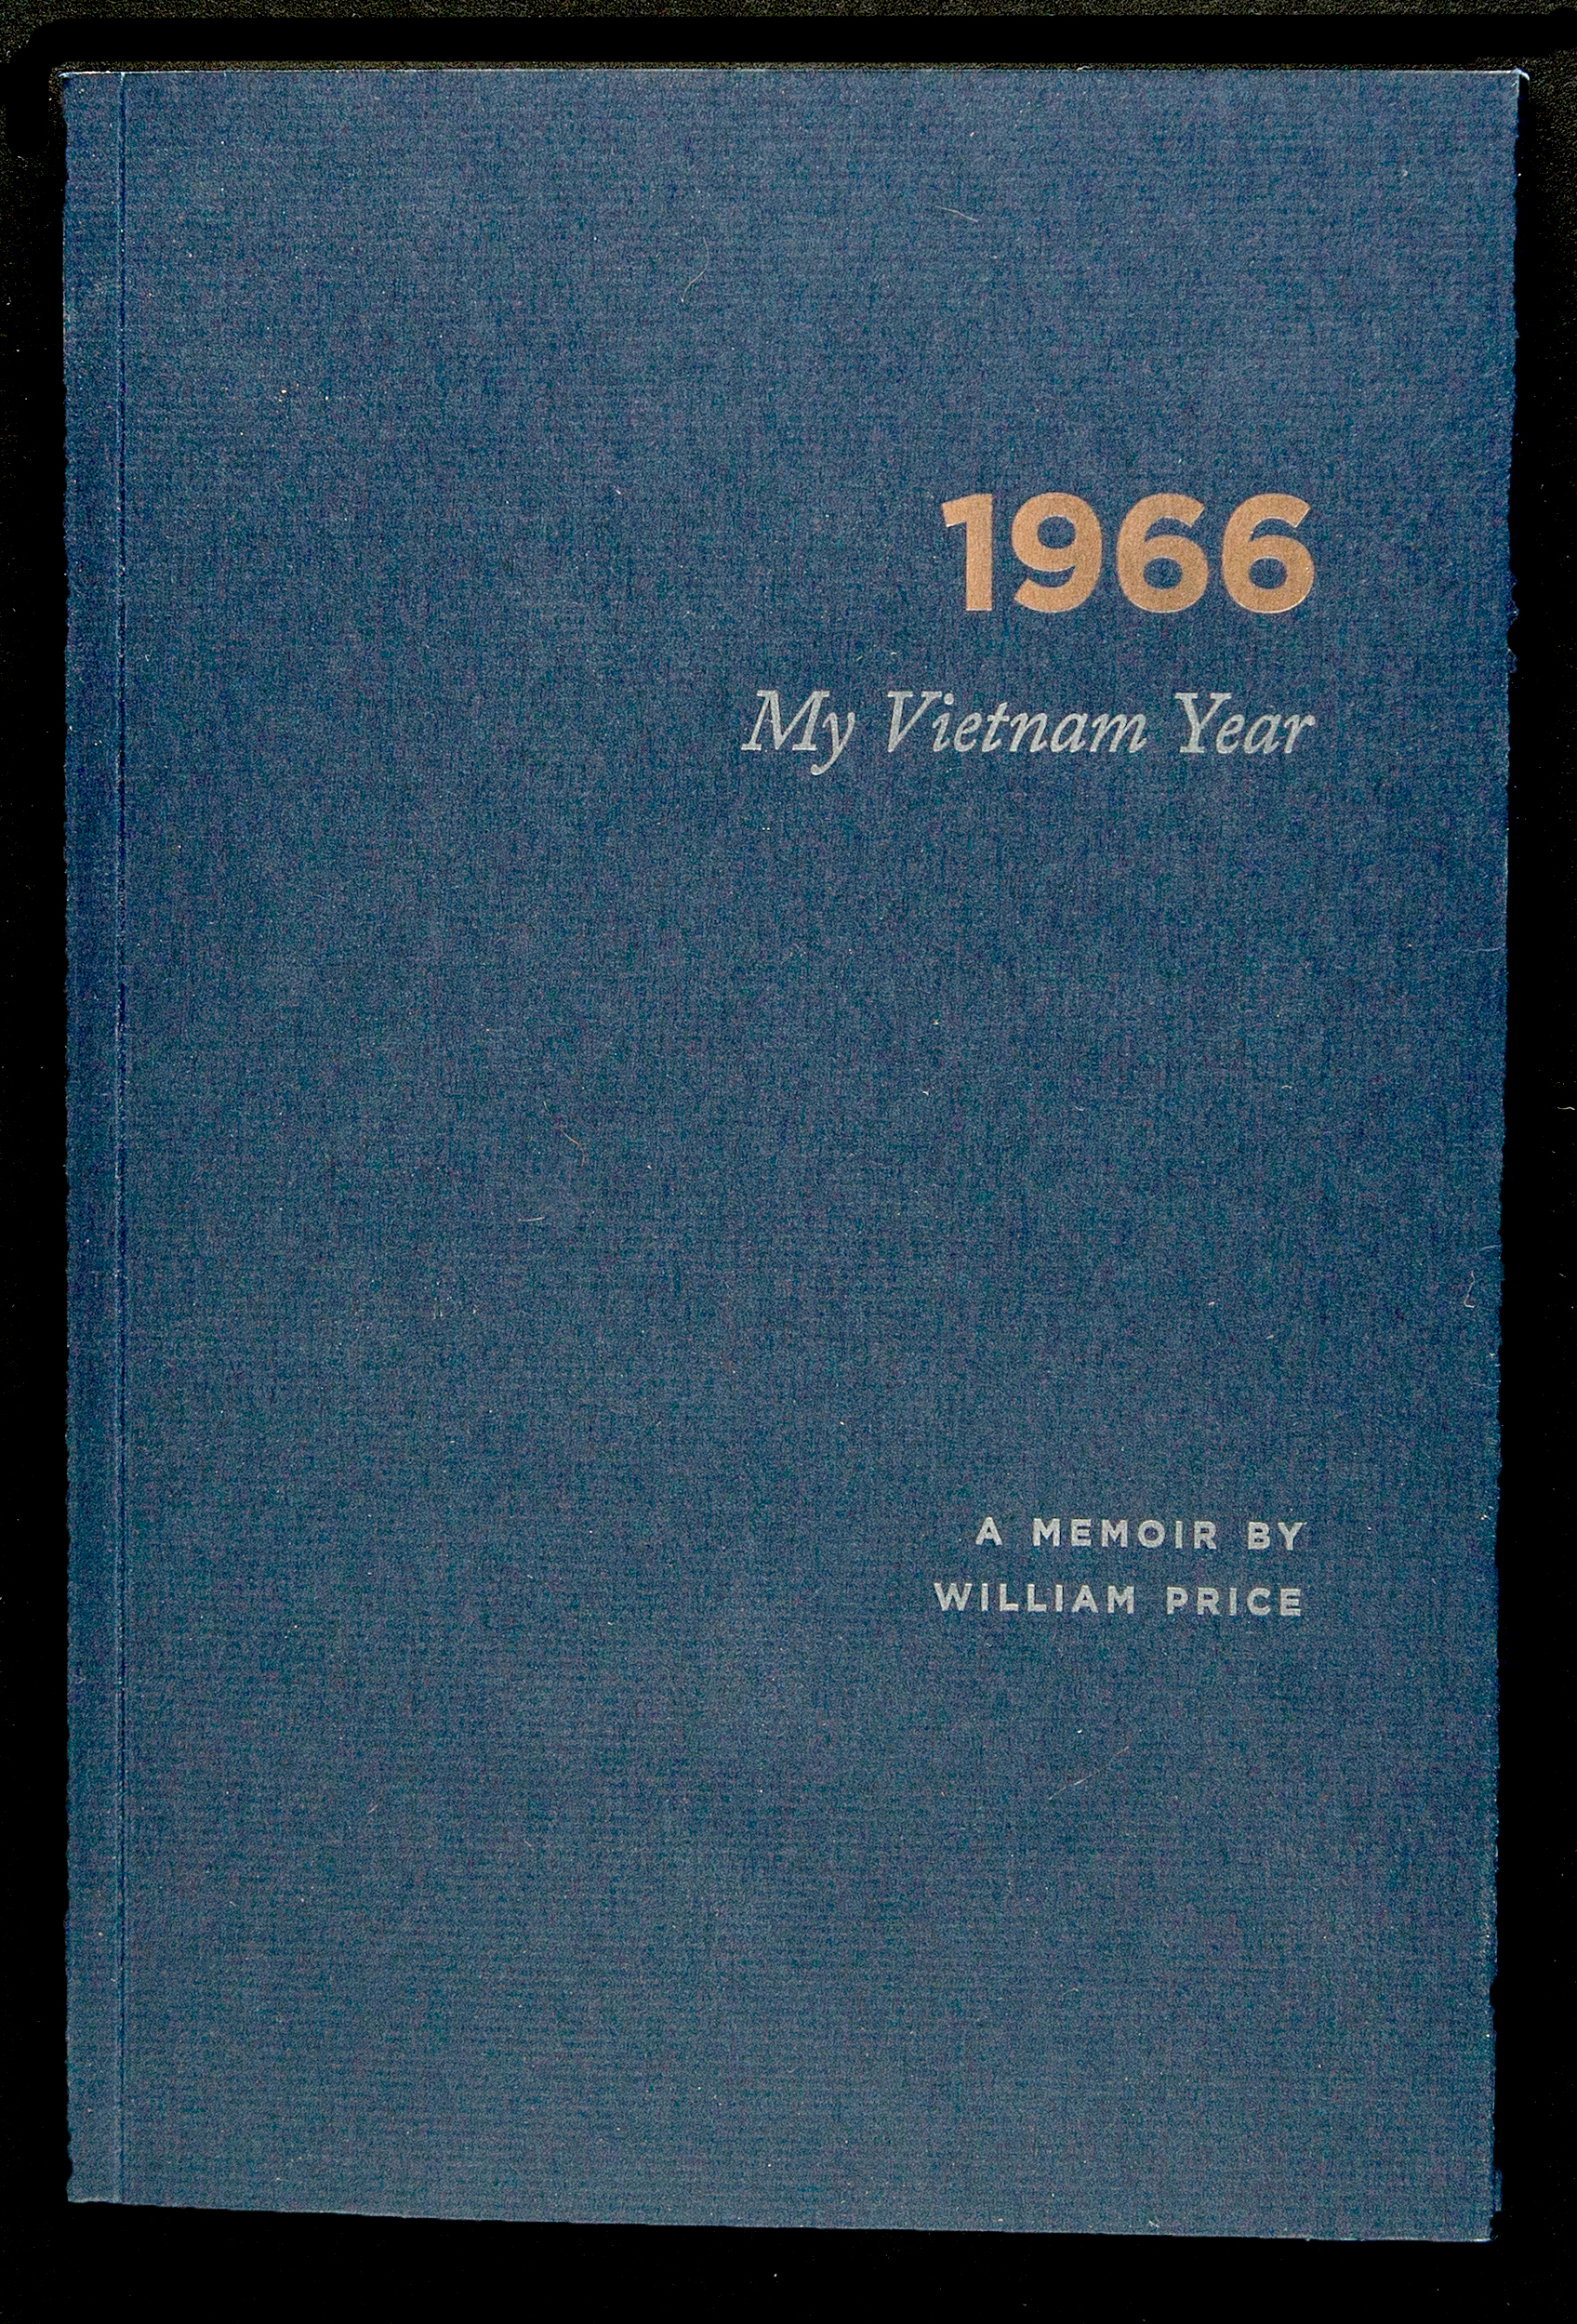 1966cover.letterpress.jpg